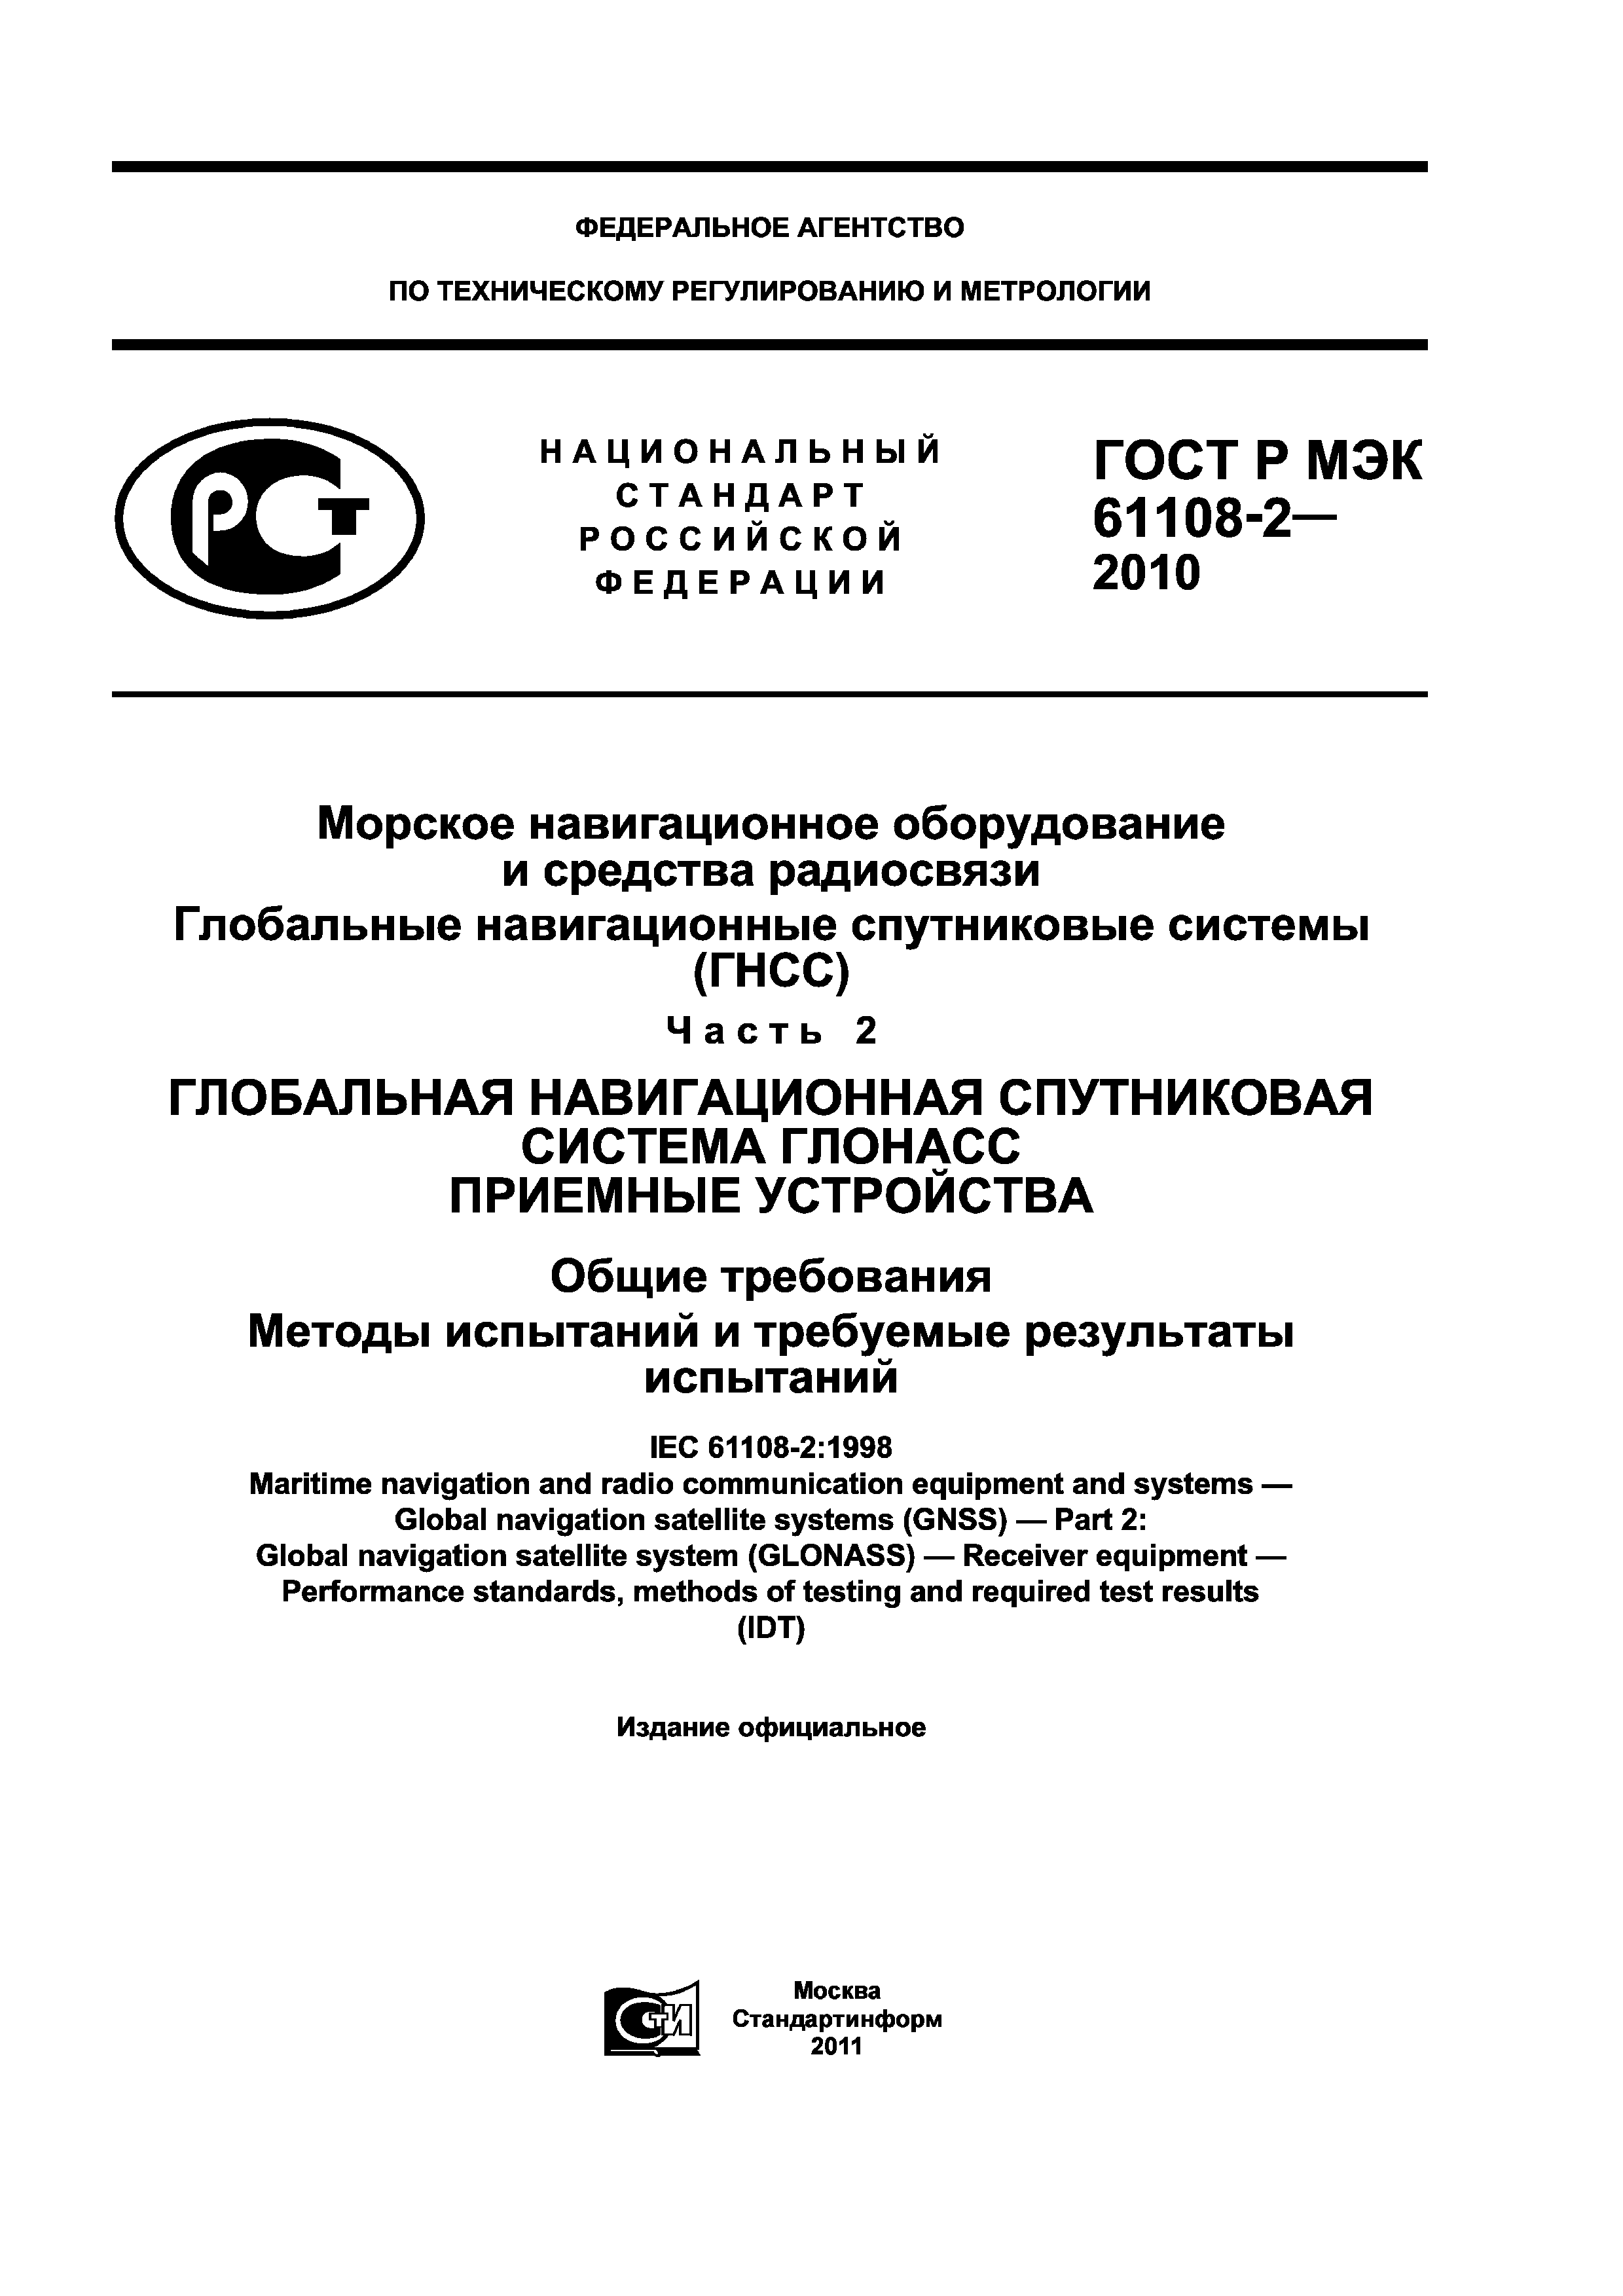 ГОСТ Р МЭК 61108-2-2010